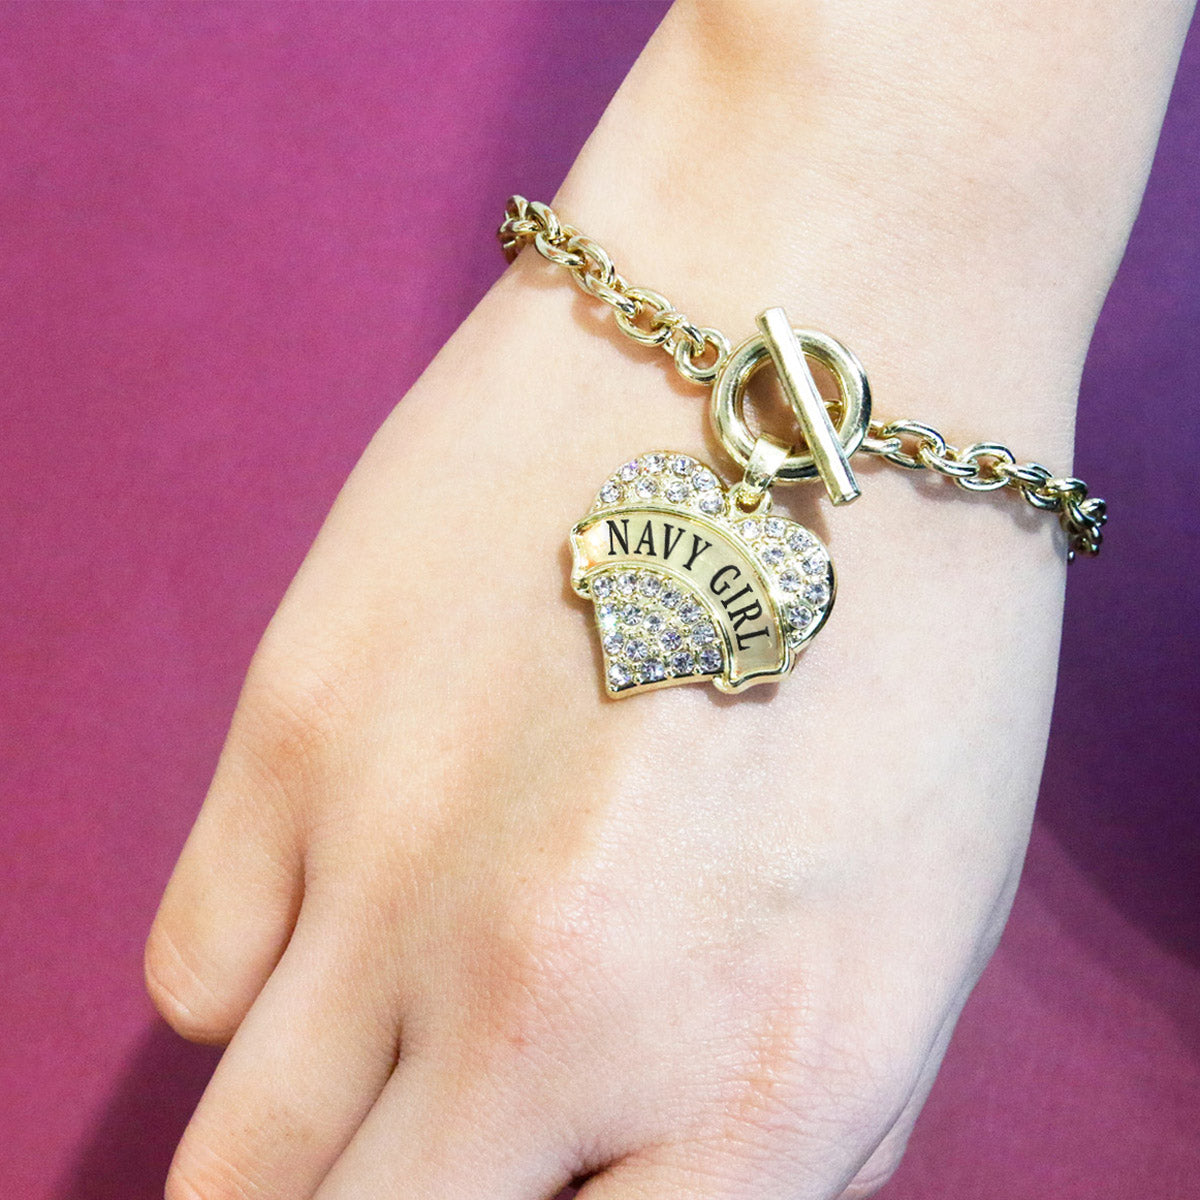 Gold Navy Girl Pave Heart Charm Toggle Bracelet